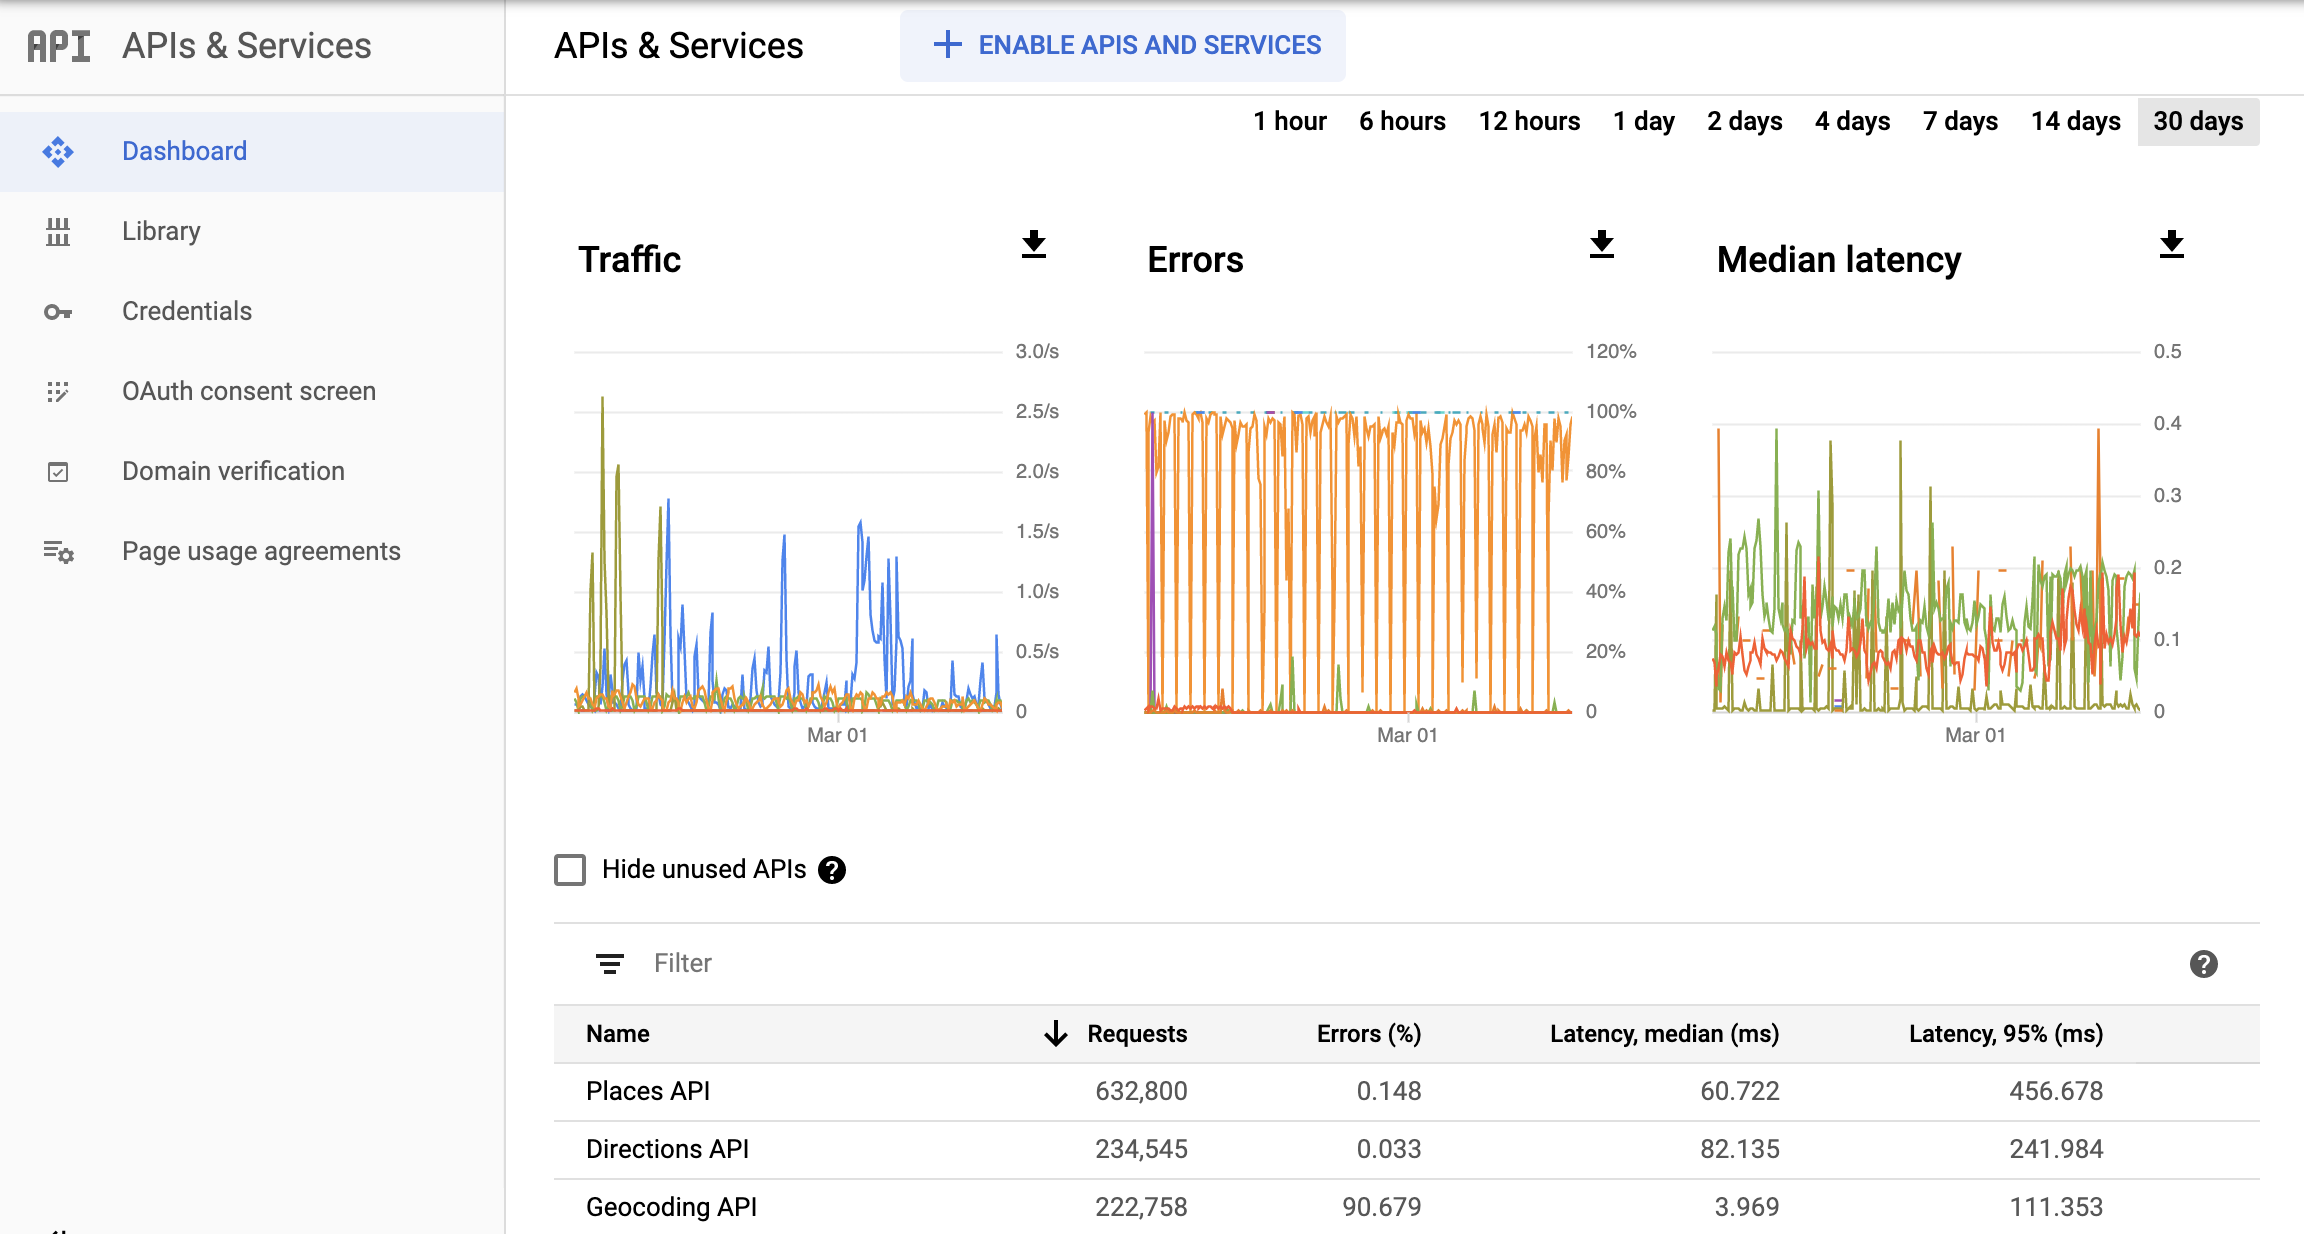 Ảnh chụp màn hình trang Monitoring API (API Giám sát) trong Google Cloud Console, cho thấy trang tổng quan về báo cáo API và Dịch vụ. Công cụ này hiển thị các biểu đồ riêng biệt về Lưu lượng truy cập, Lỗi và Độ trễ trung bình. Những biểu đồ này
  có thể hiển thị dữ liệu trong một giờ đến 30 ngày.